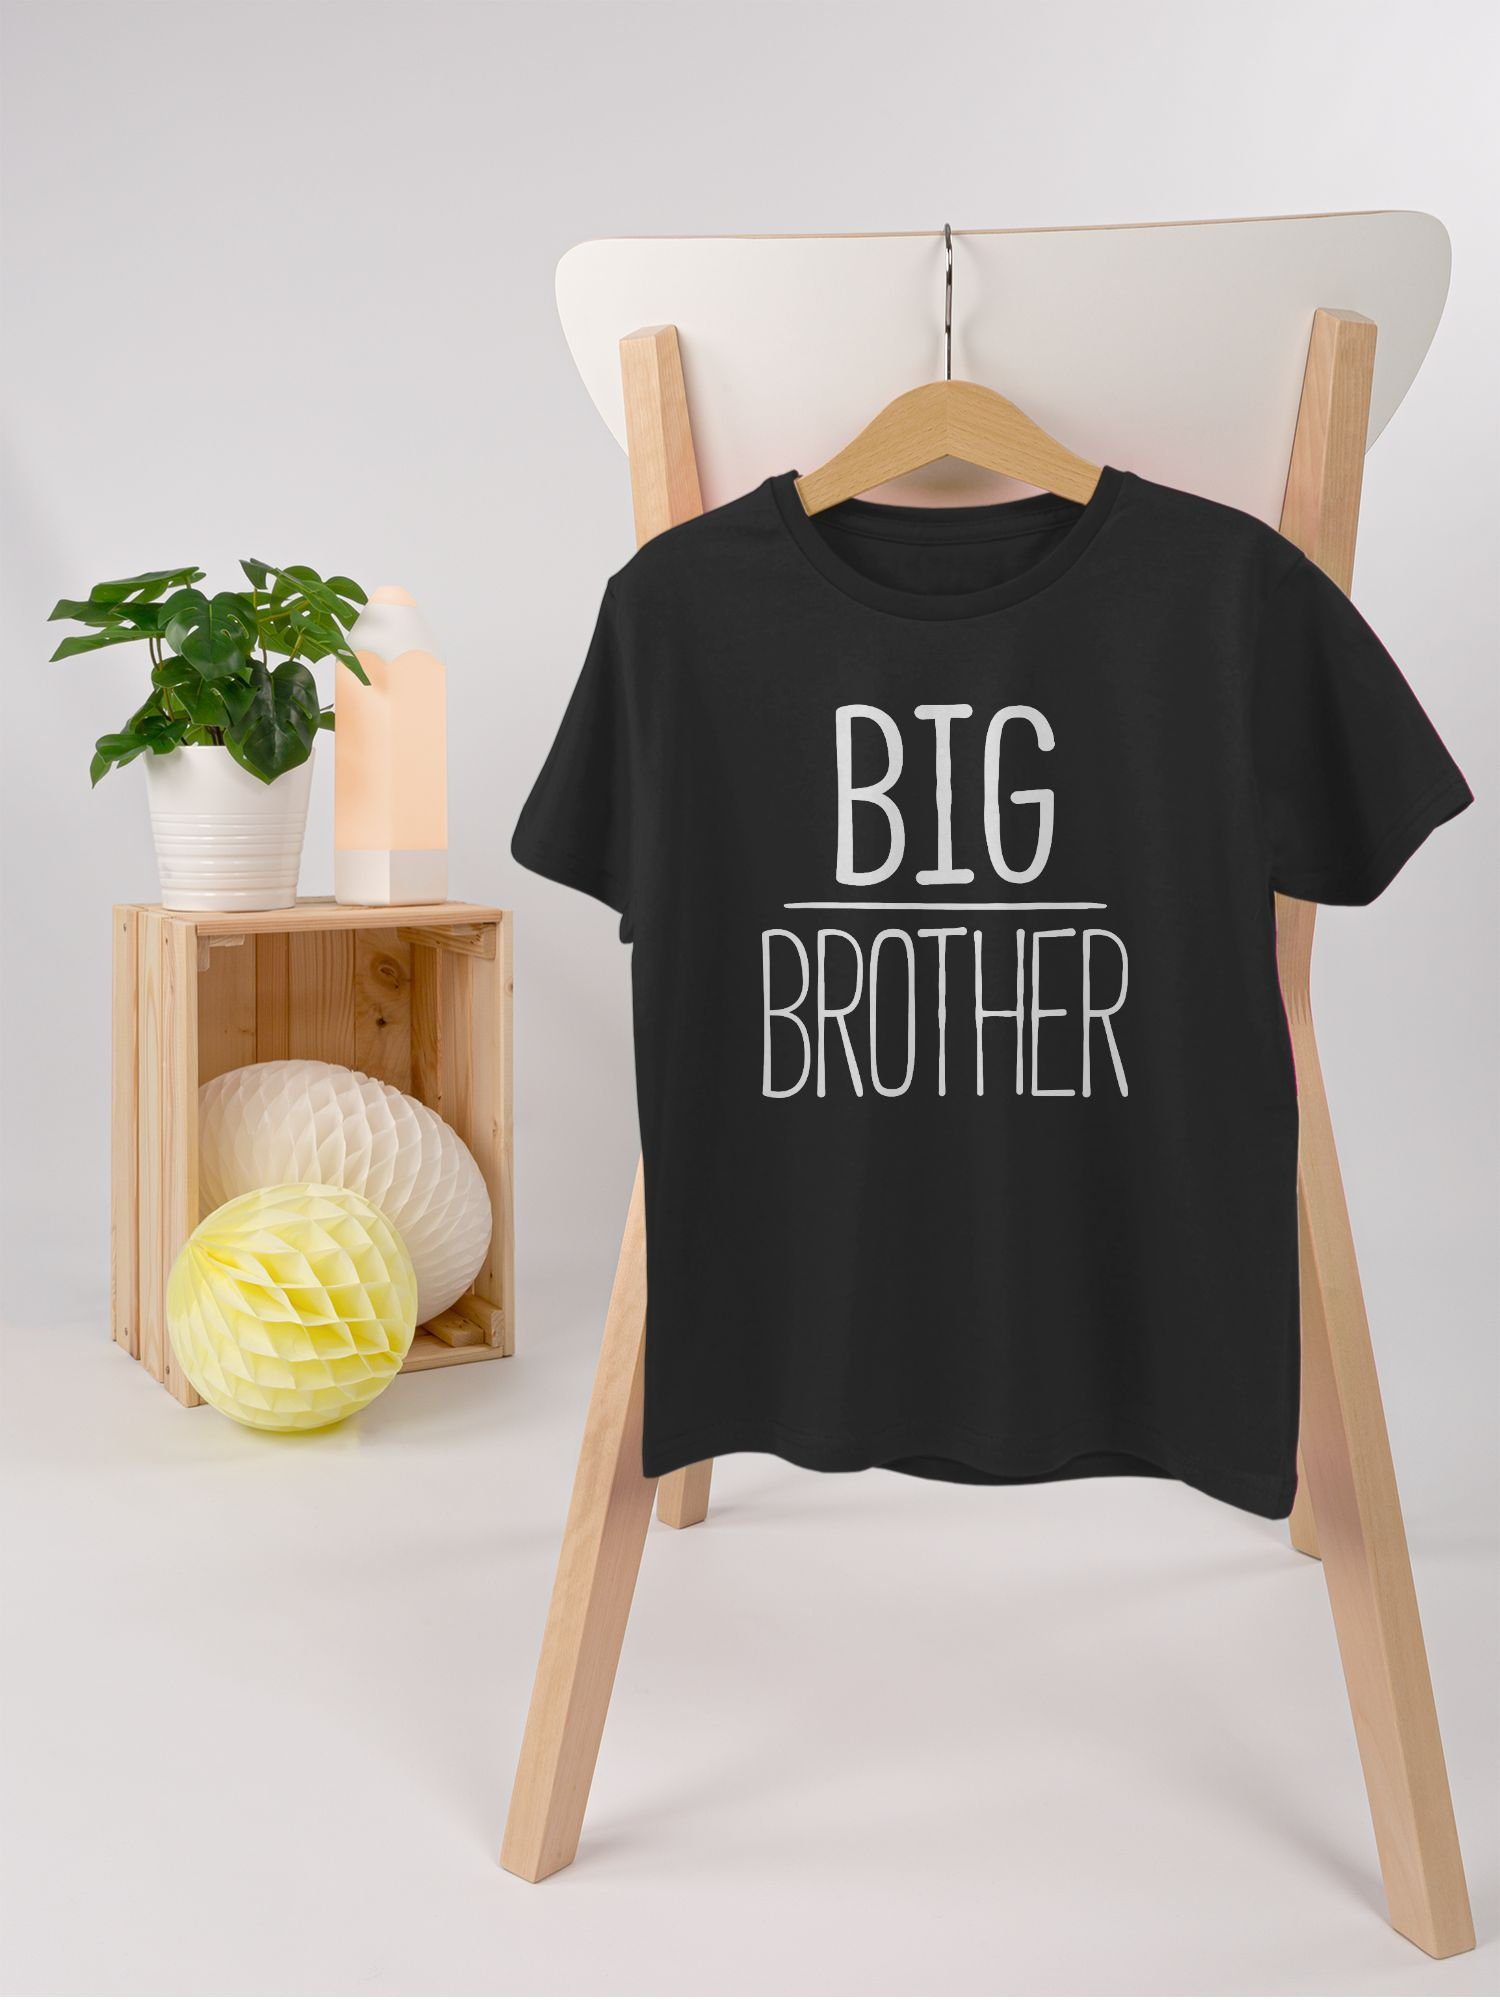 Kinder Kids (Gr. 92 - 146) Shirtracer T-Shirt Big Brother - Geschwister Bruder und Schwester - Jungen Kinder T-Shirt Outfit Gesc